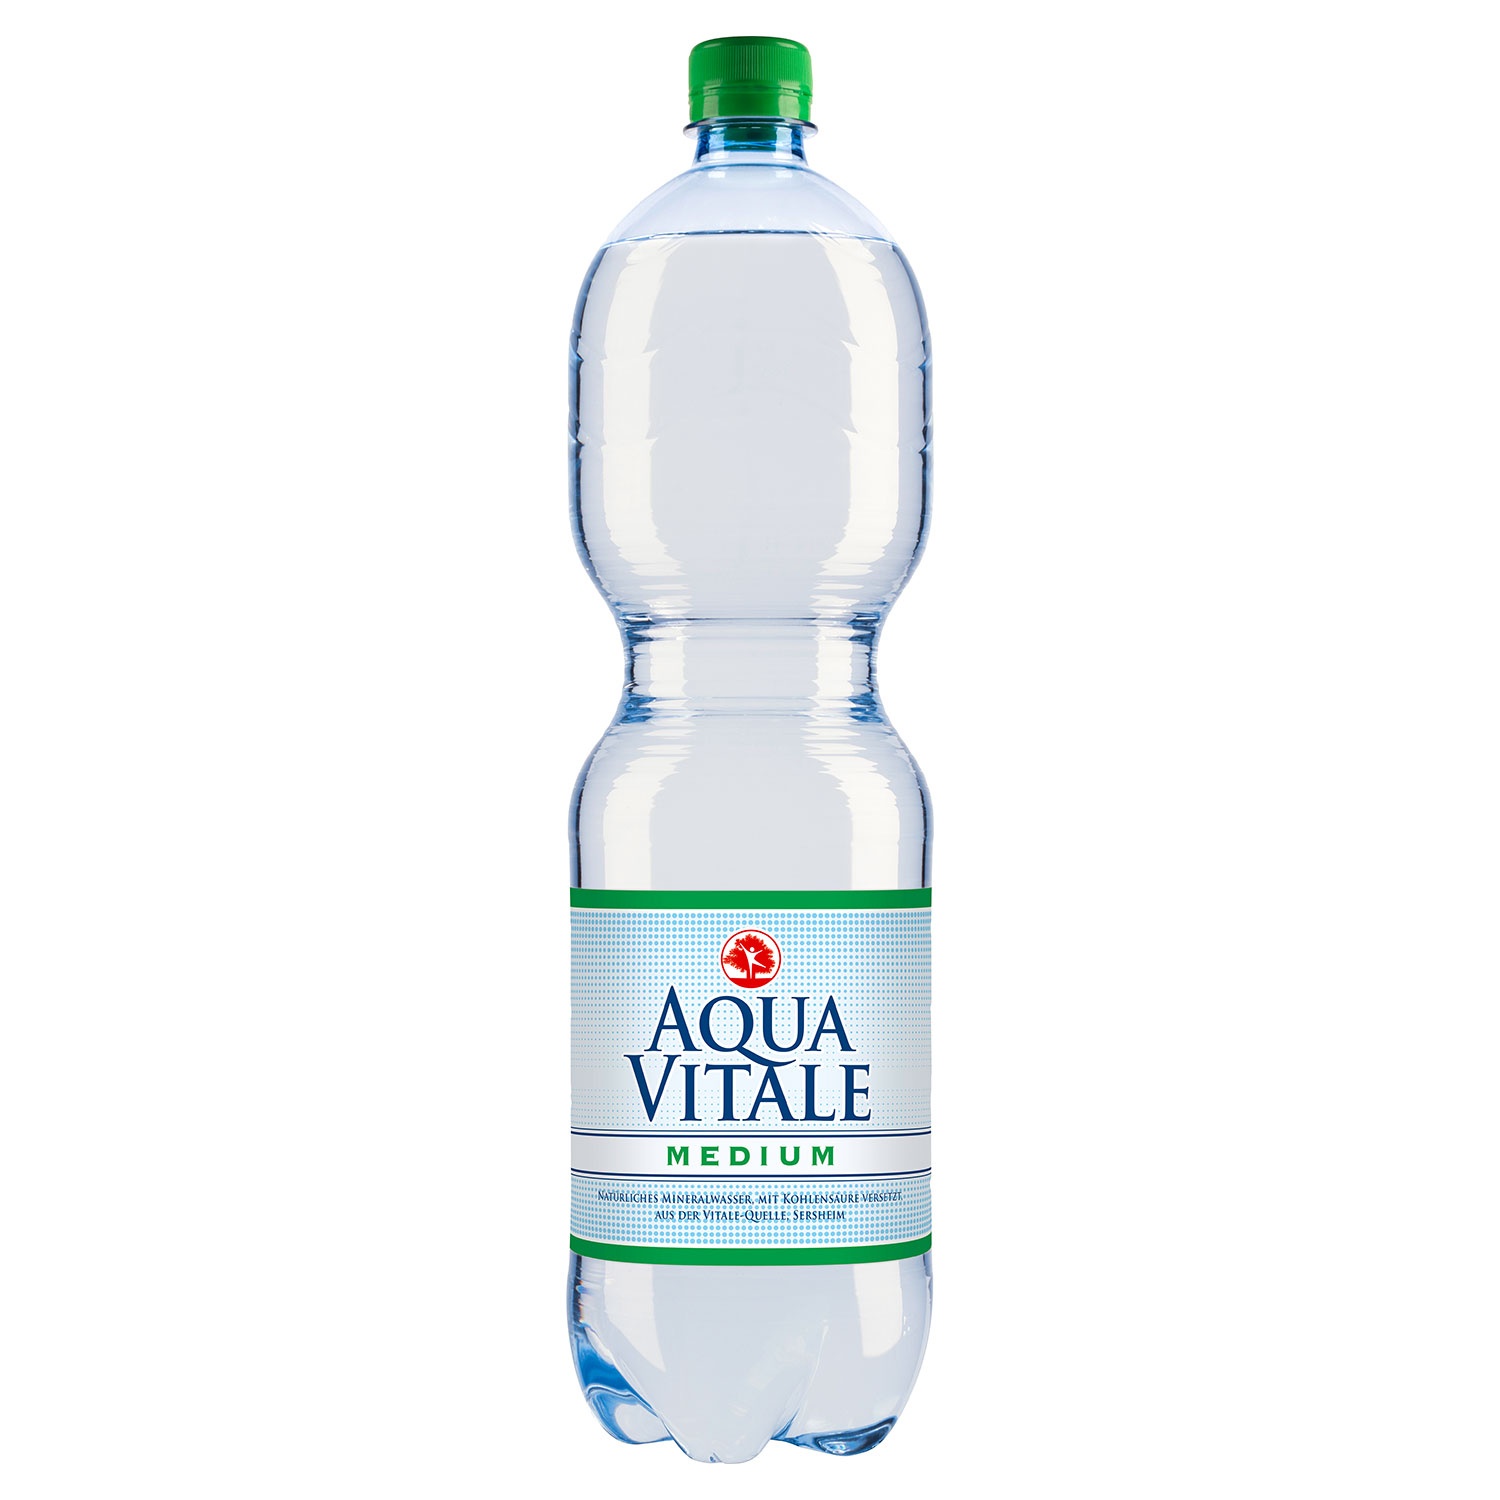 AQUA DEST. Destilliertes Wasser (PET)